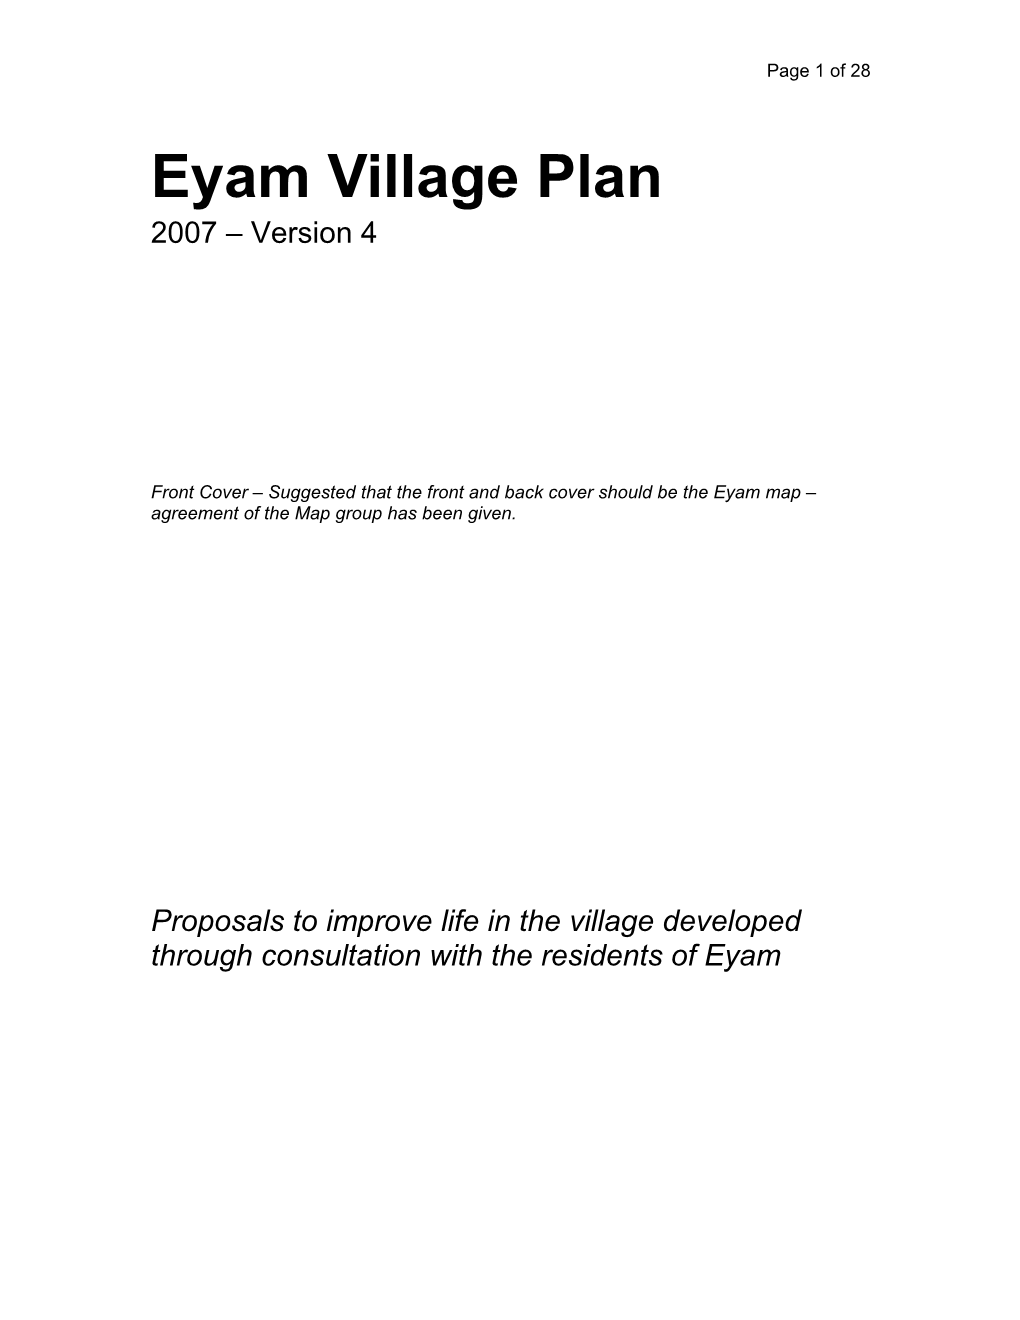 Eyam Village Plan